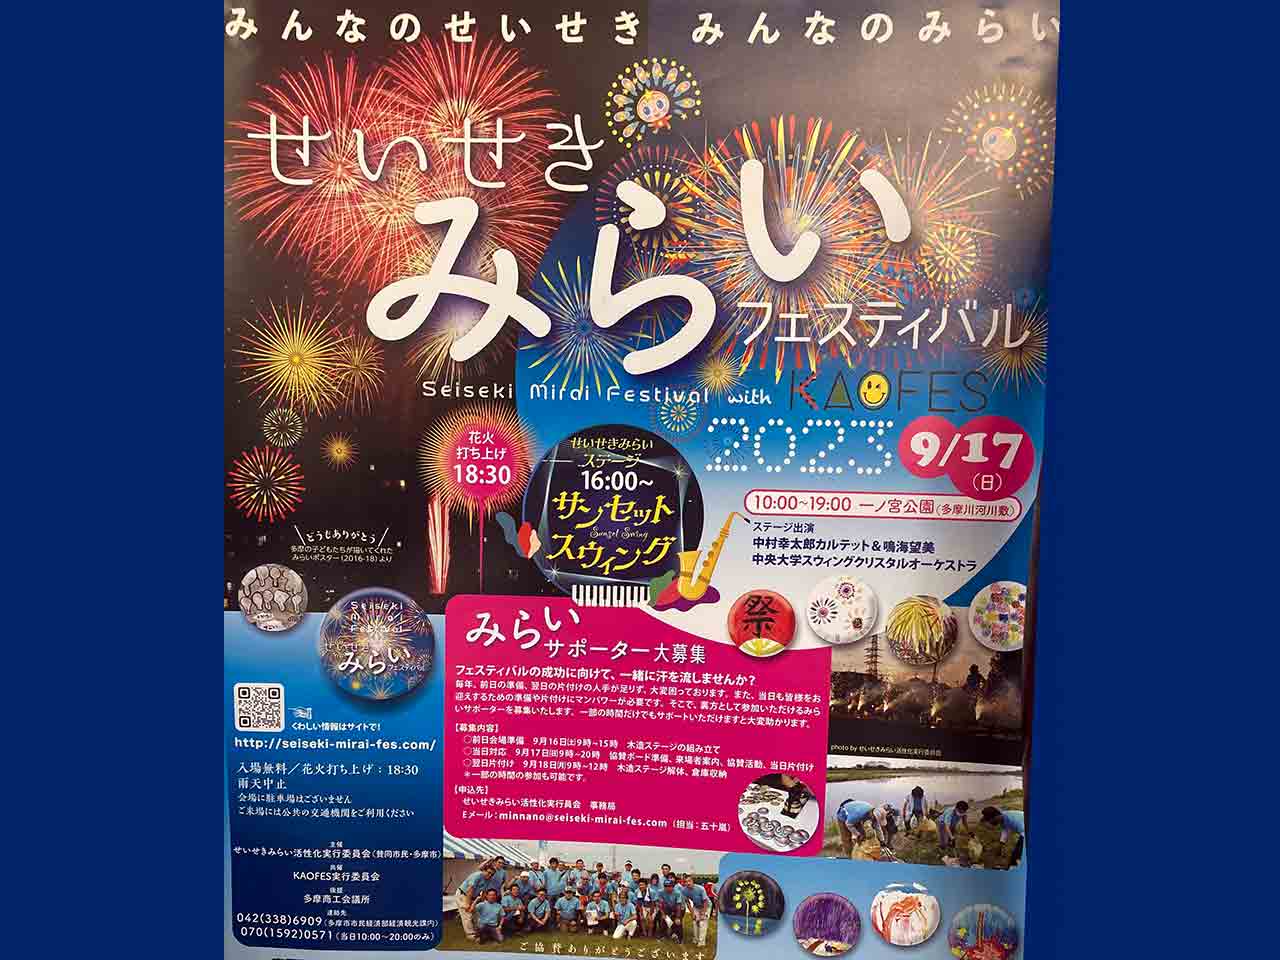 せいせきみらいフェスティバル with KAOFES 2023